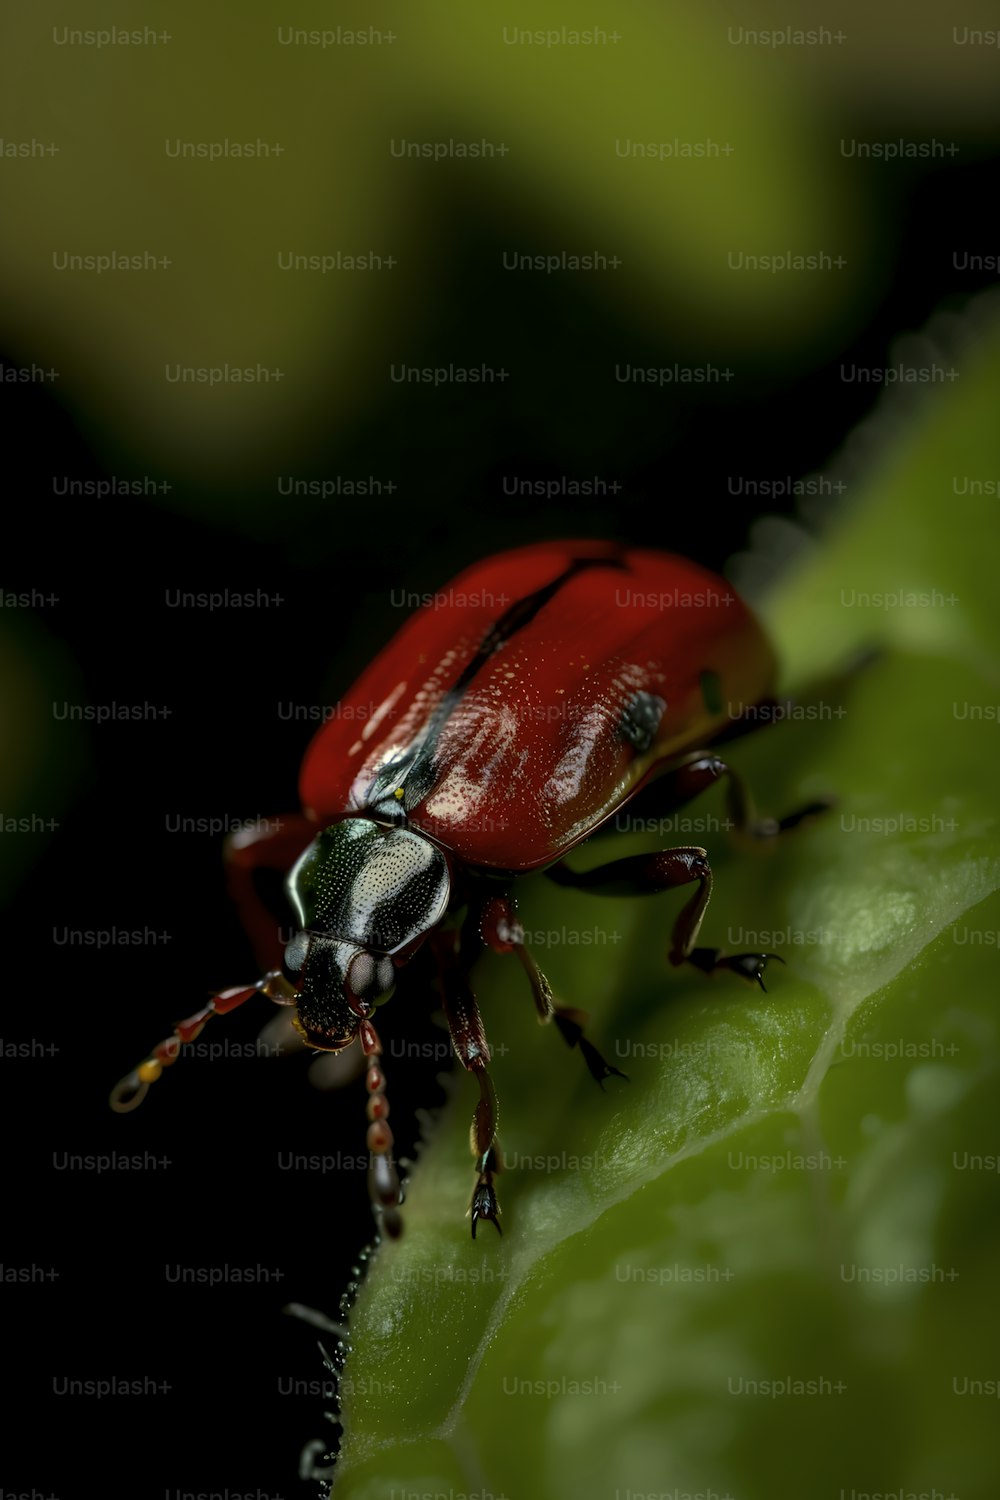 녹색 잎 위에 앉아있는 붉은 딱정벌레